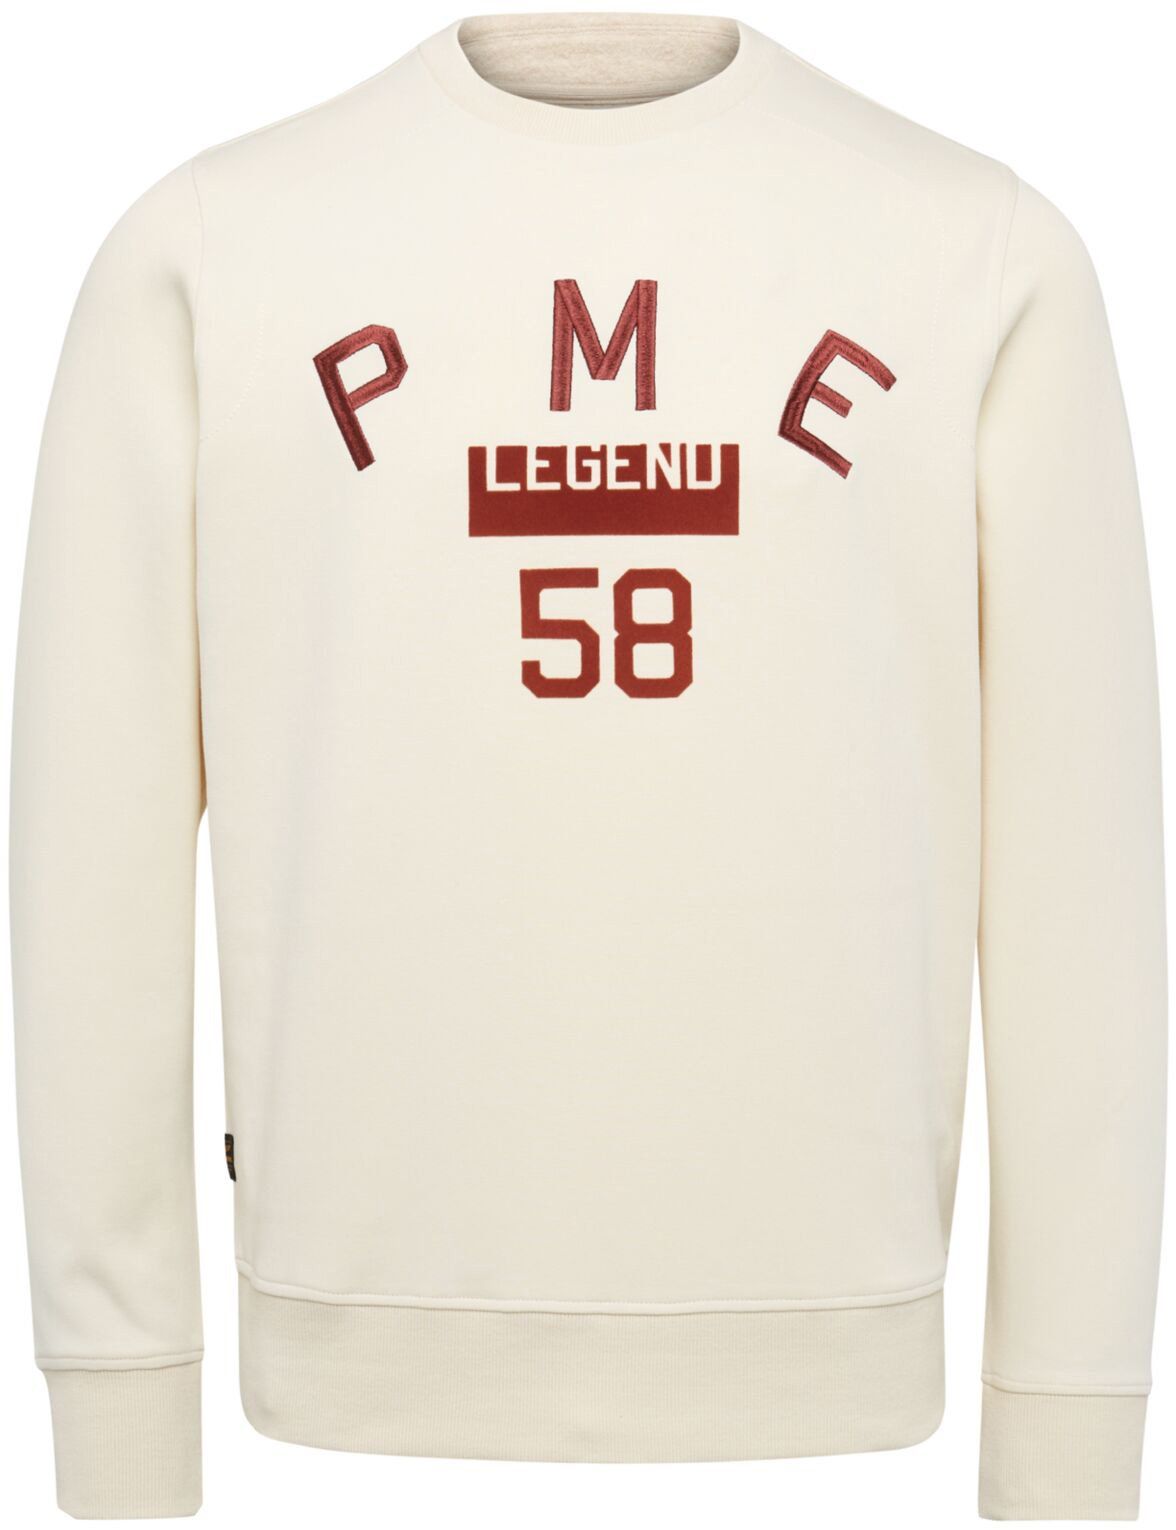 PME Legend Sweater White Off-White size 3XL